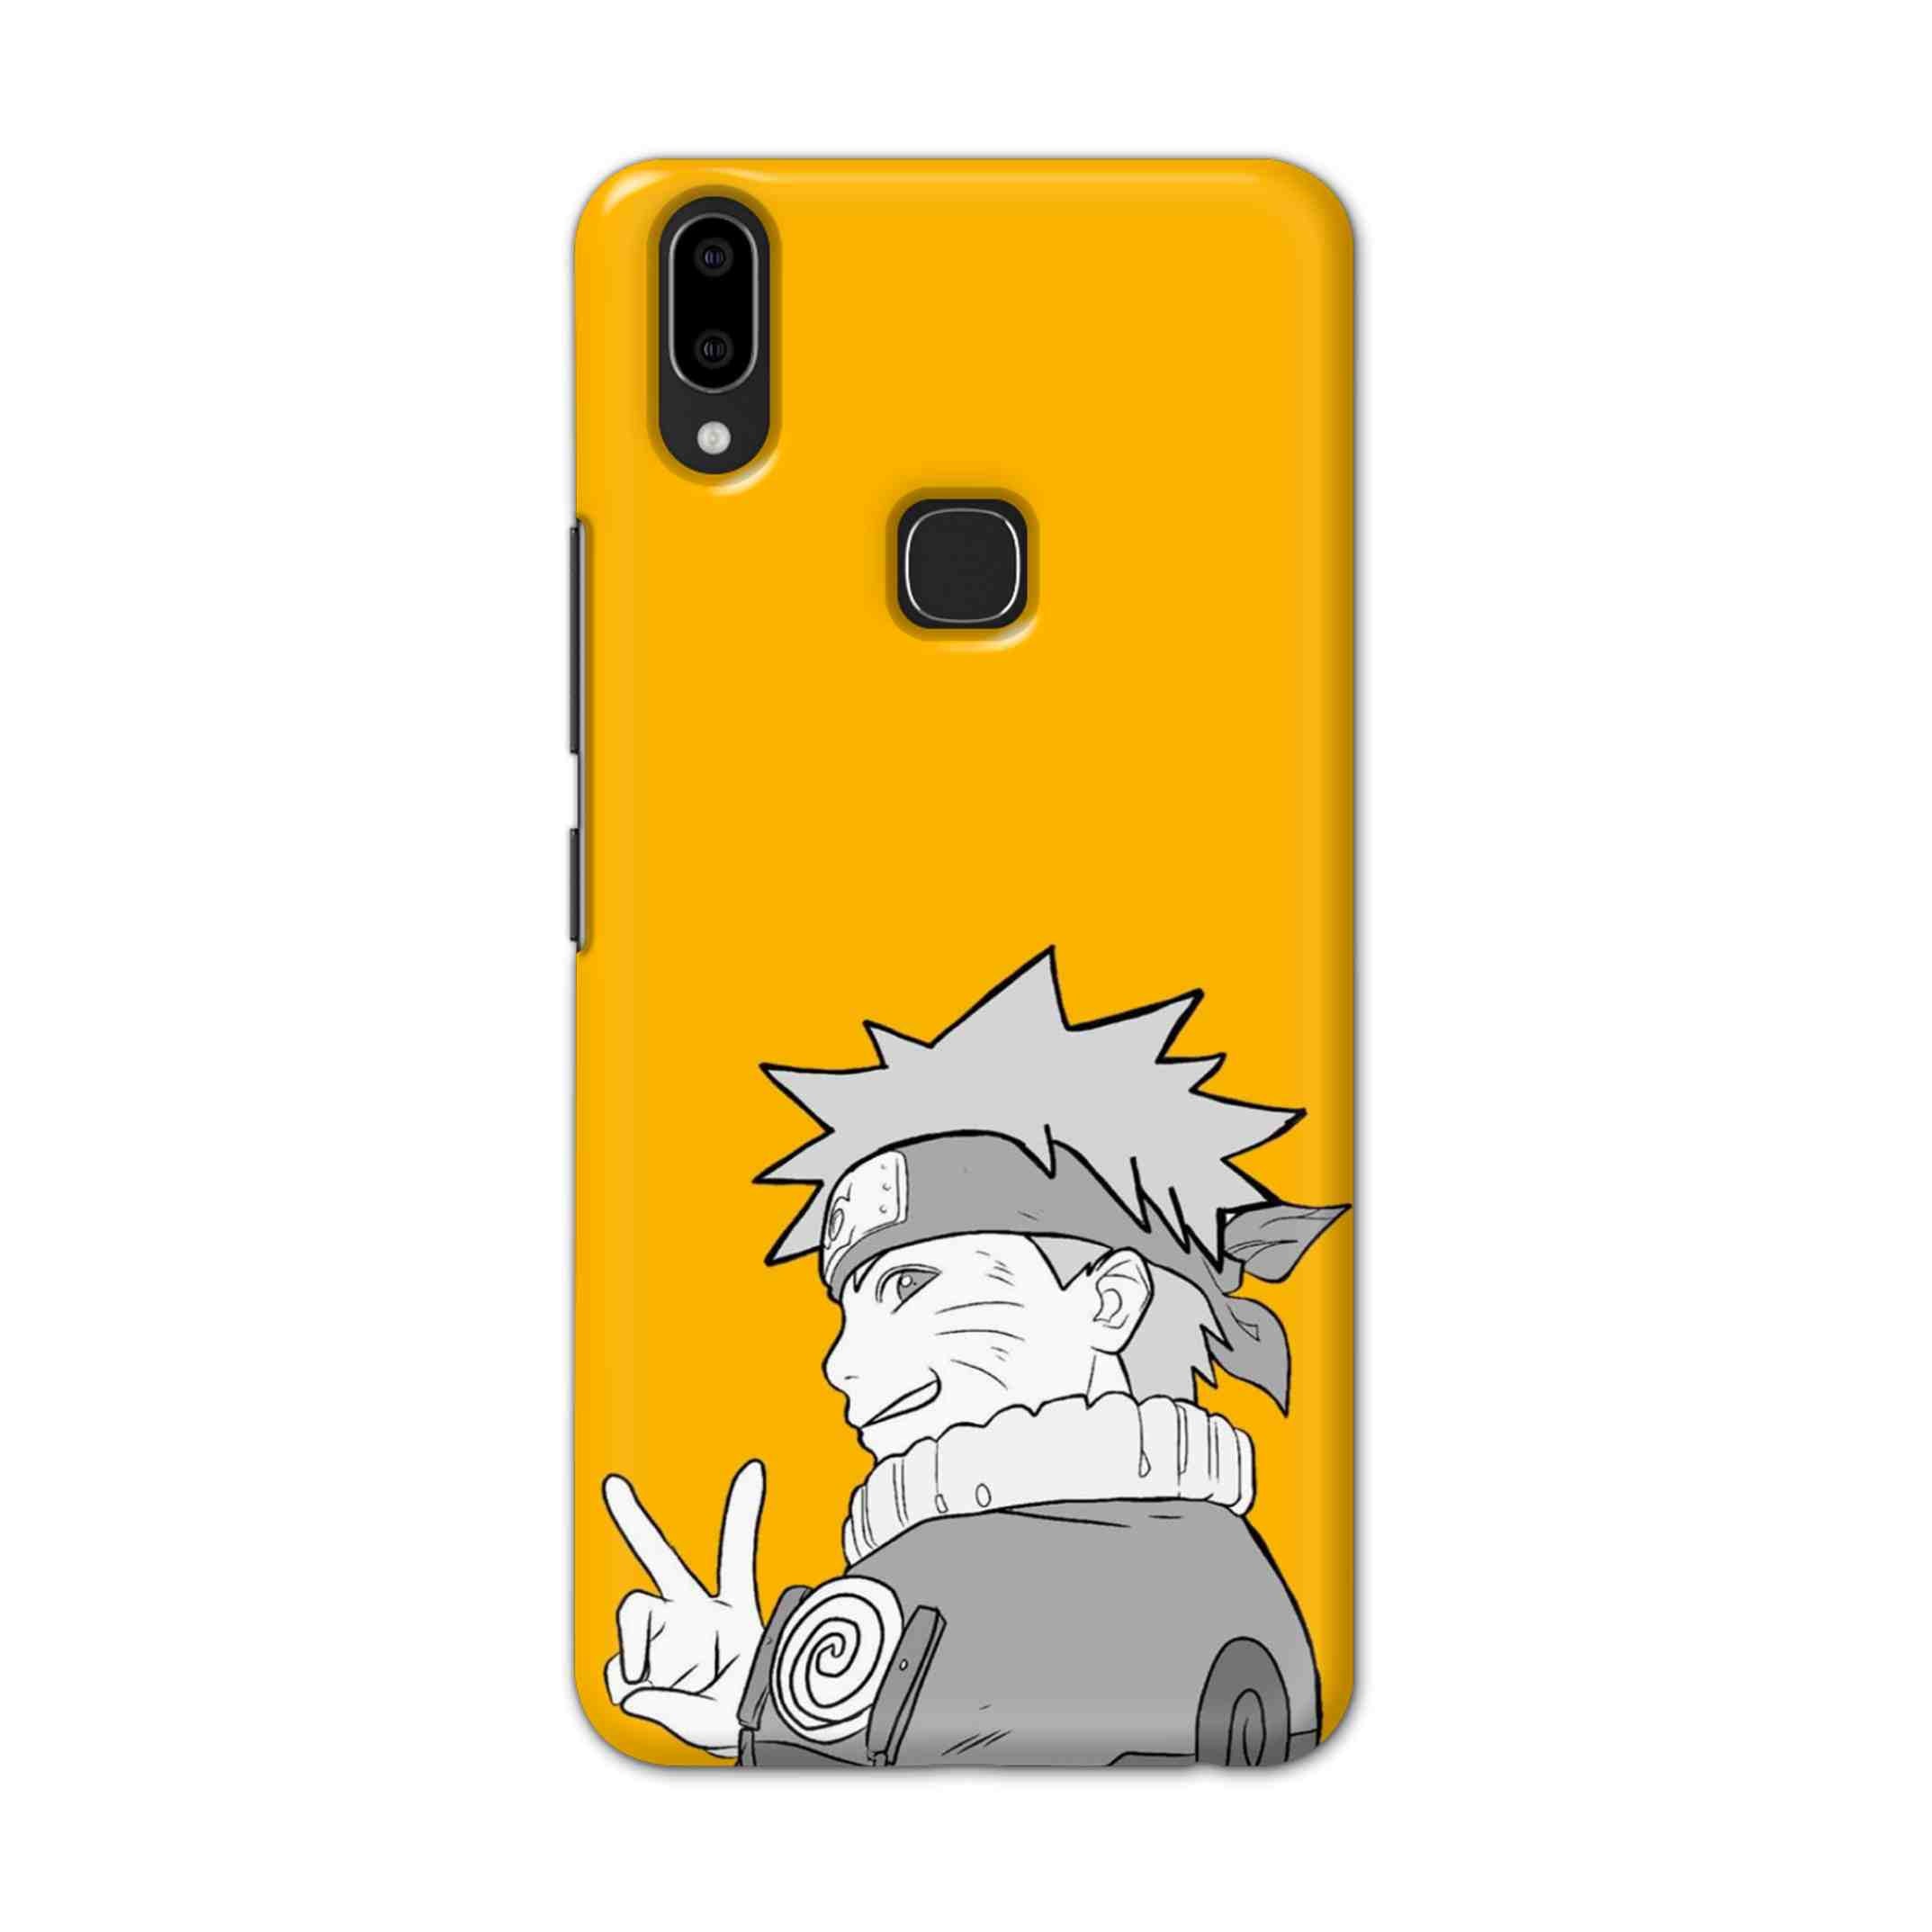 Buy White Naruto Hard Back Mobile Phone Case Cover For Vivo V9 / V9 Youth Online